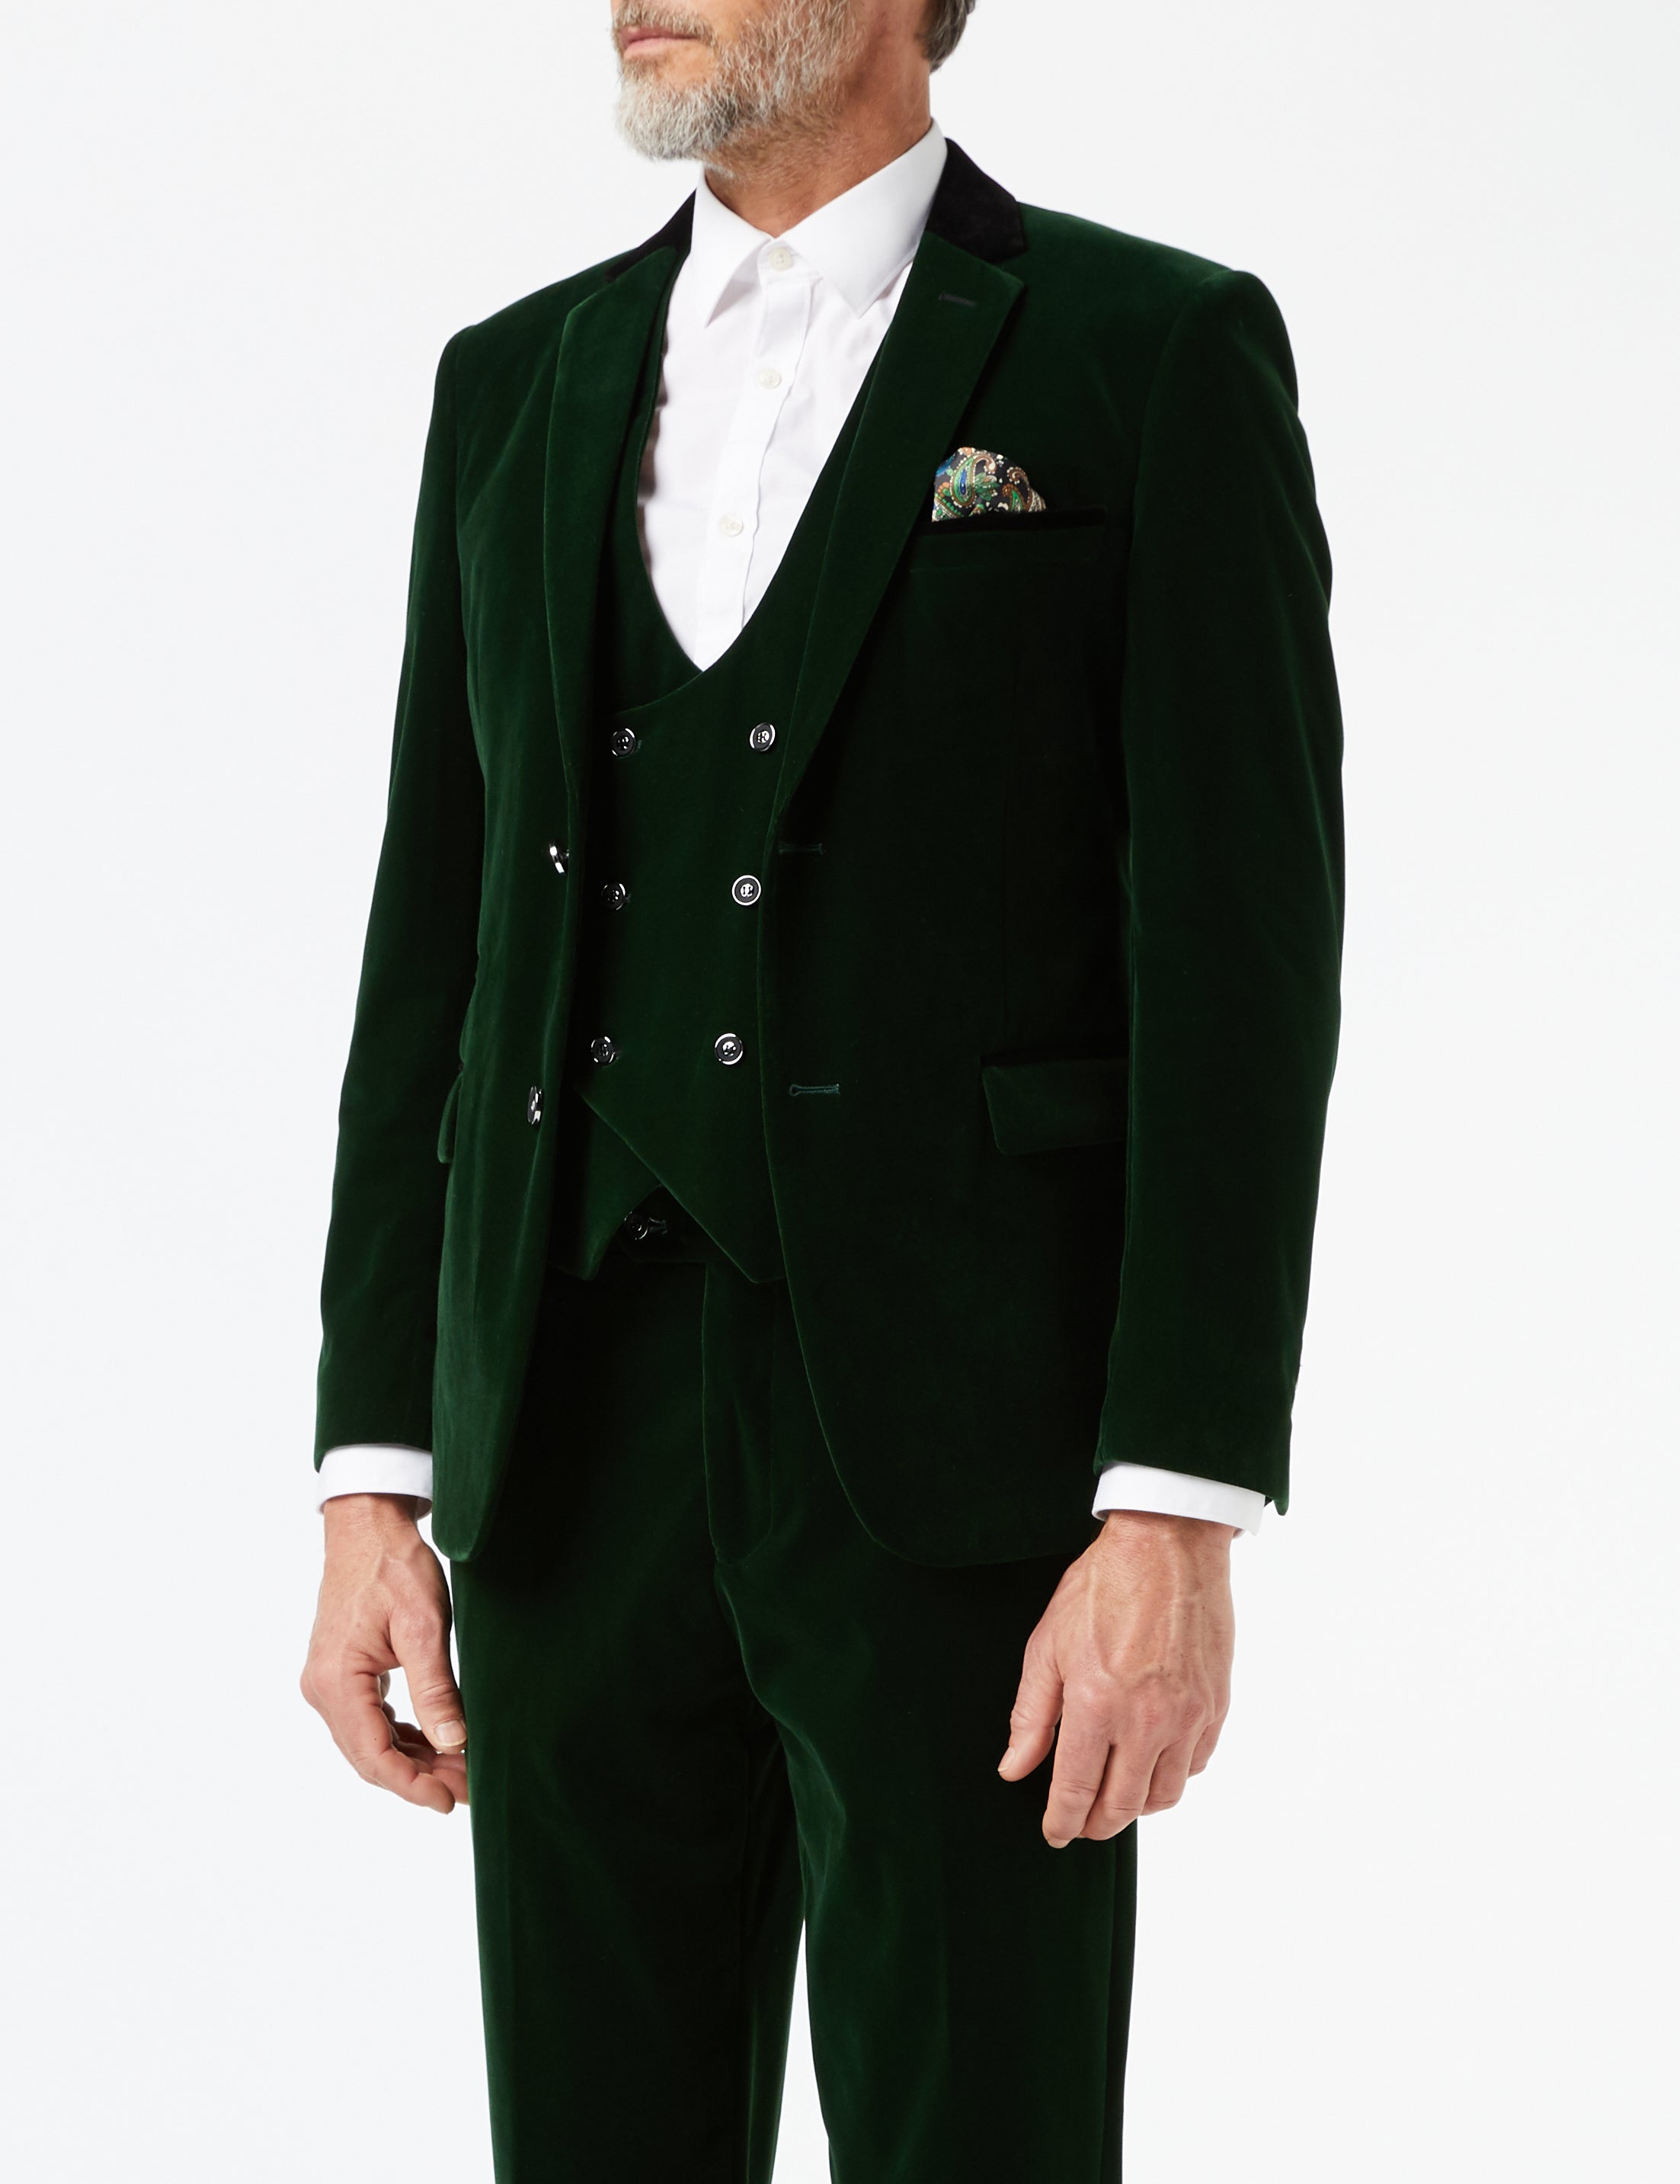 Green Velvet 3 Piece Wedding Suit